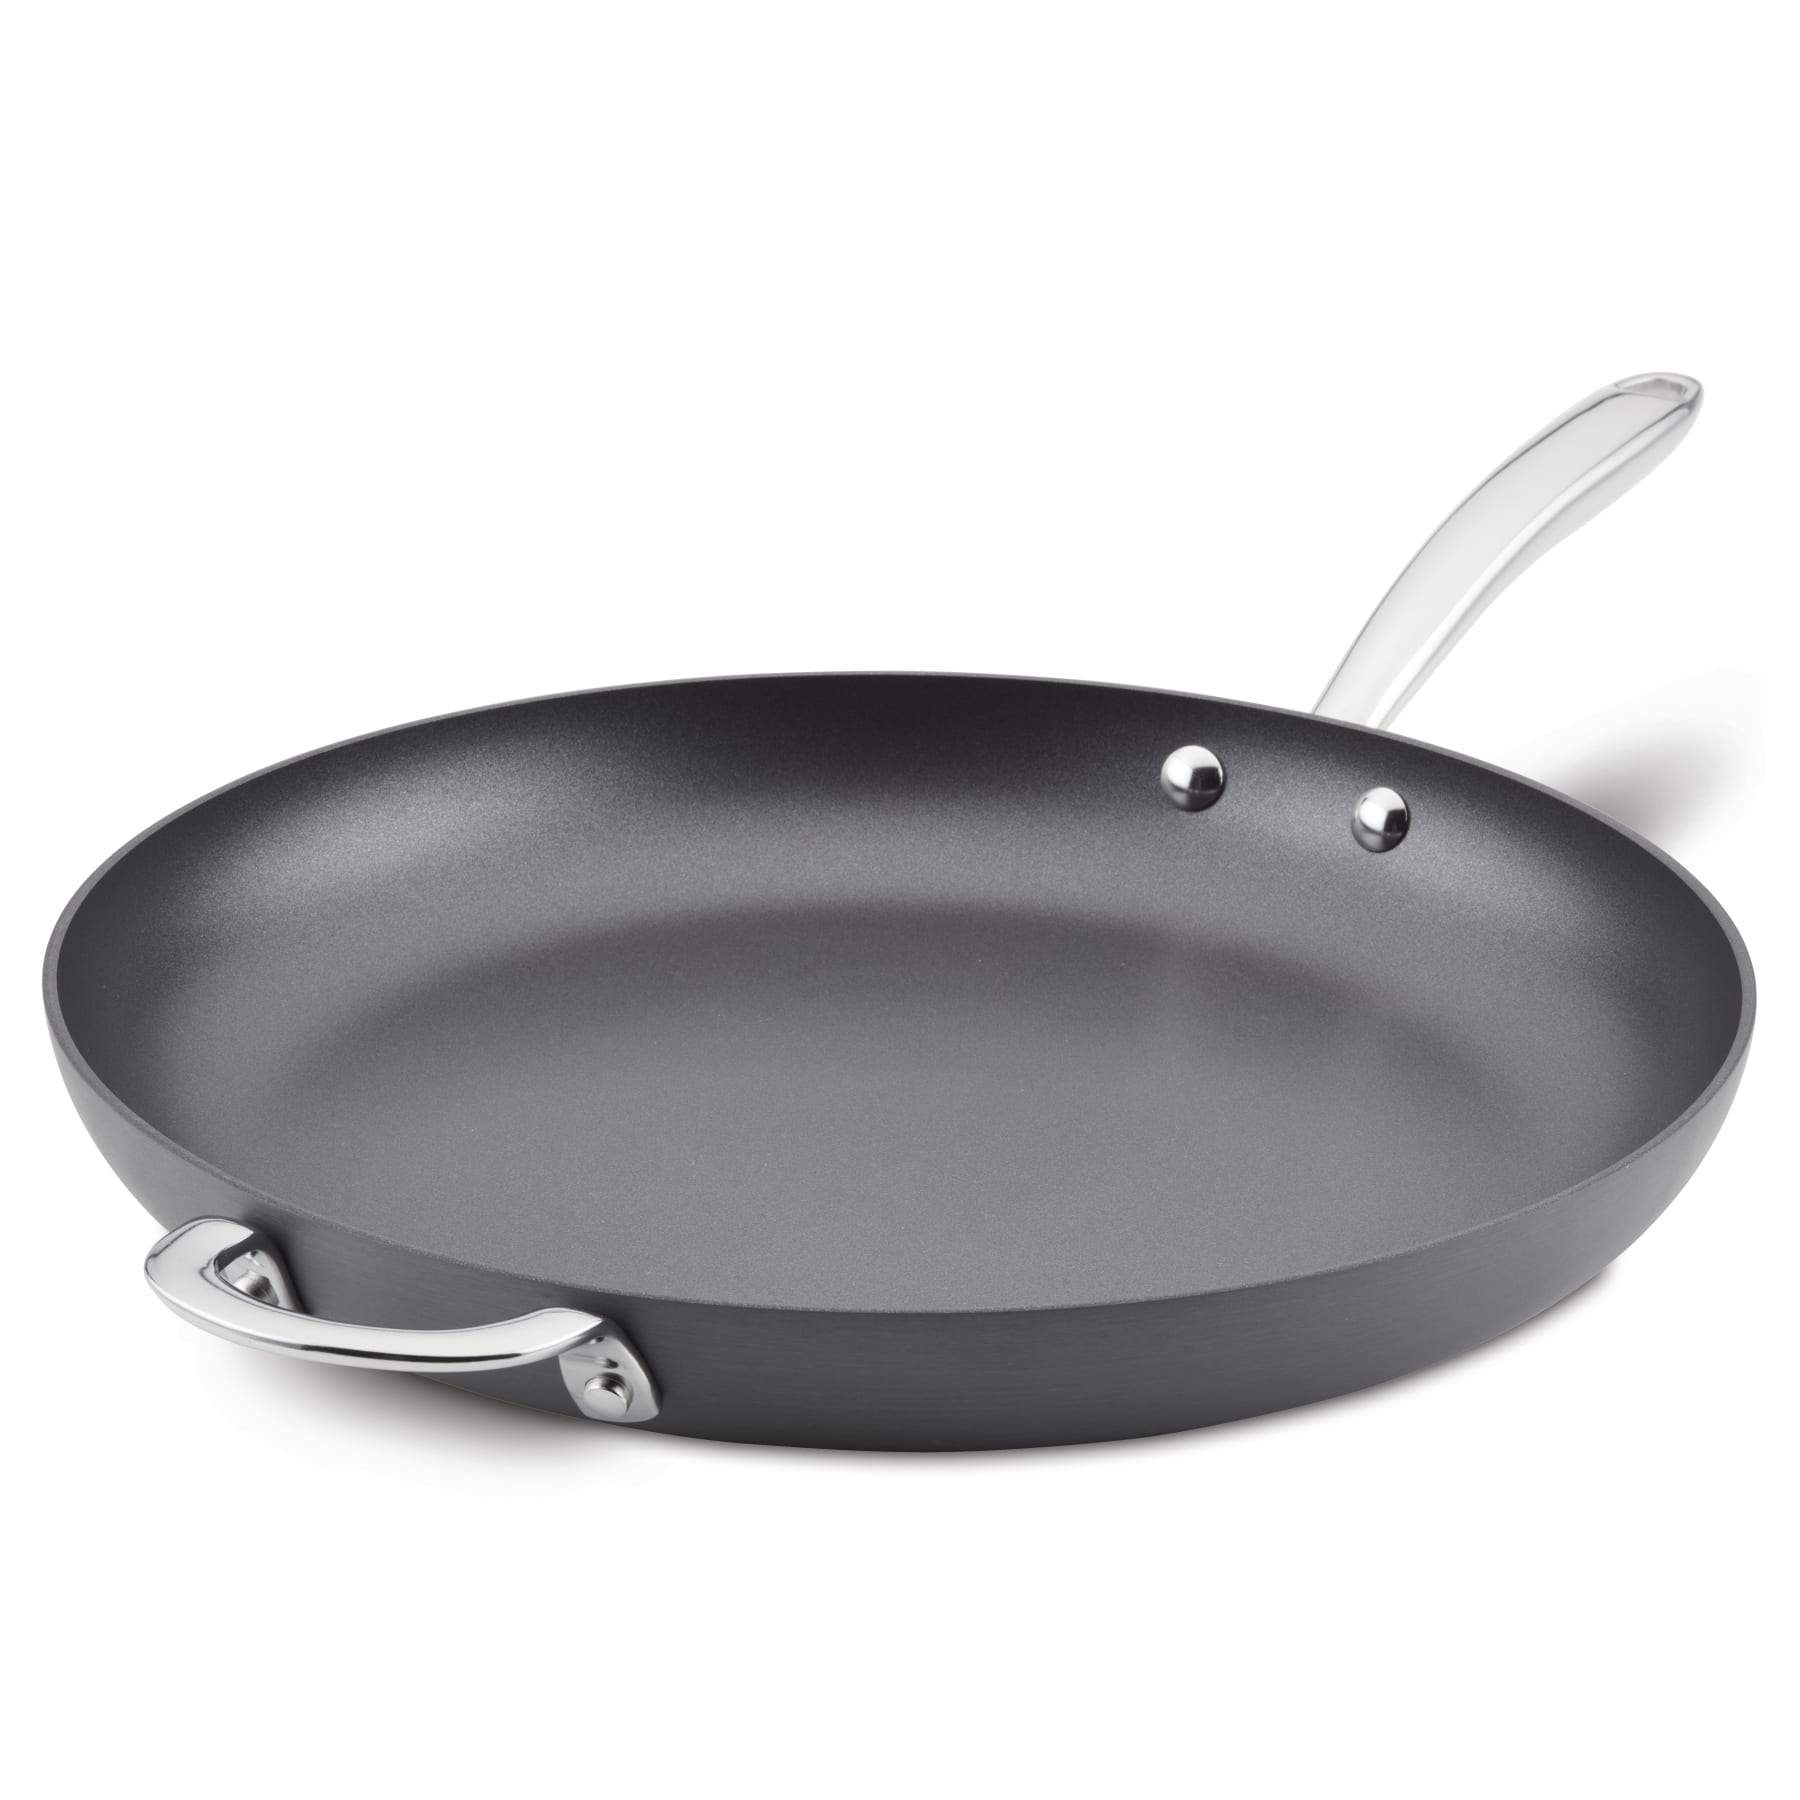 14-Inch Nonstick Frying Pan